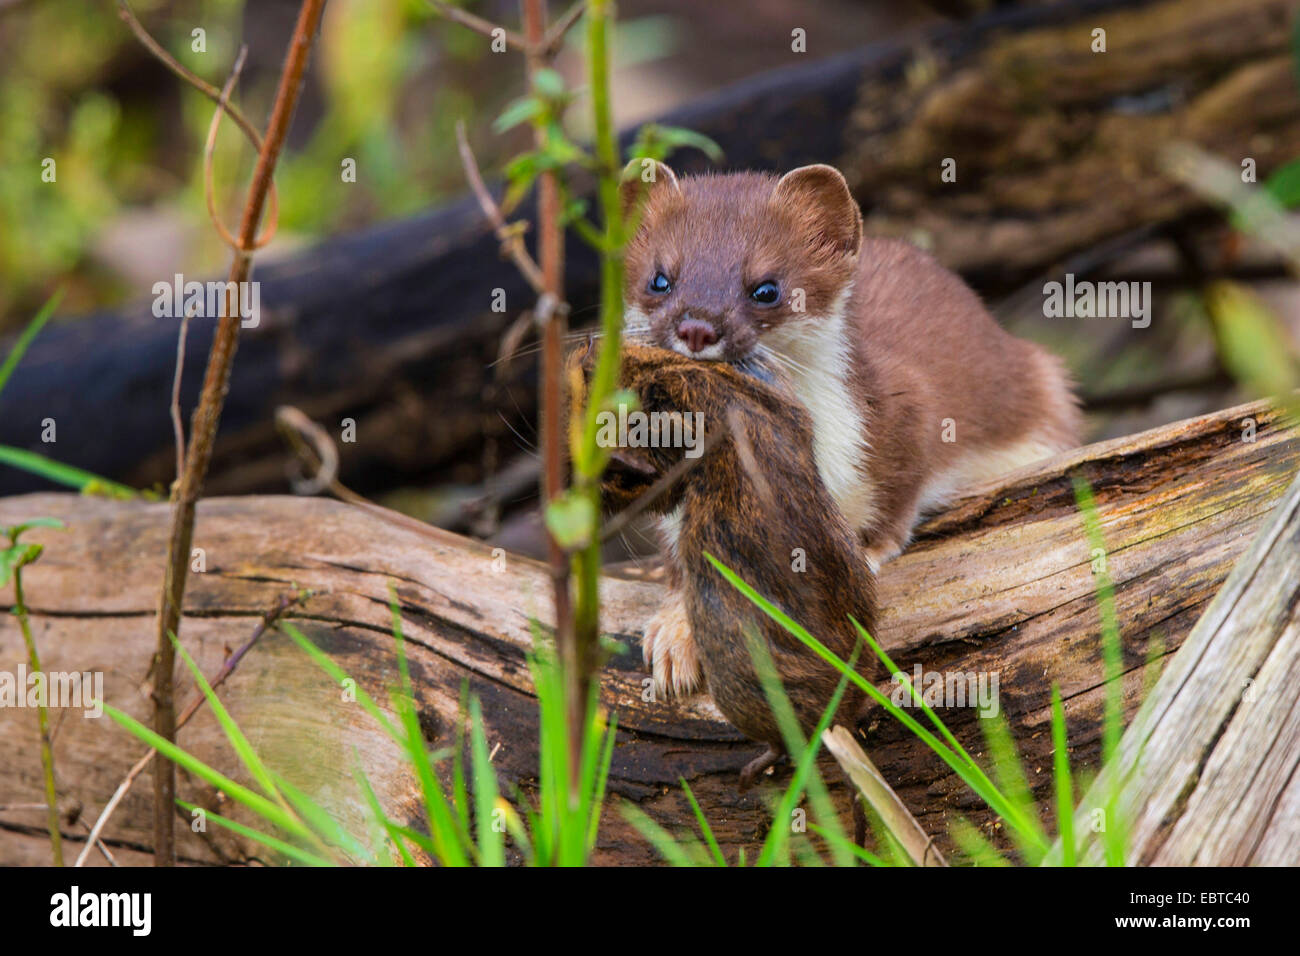 Ermellino, ermellino, corto-tailed donnola (Mustela erminea), Sommer pelliccia catturati con mouse, in Germania, in Baviera Foto Stock